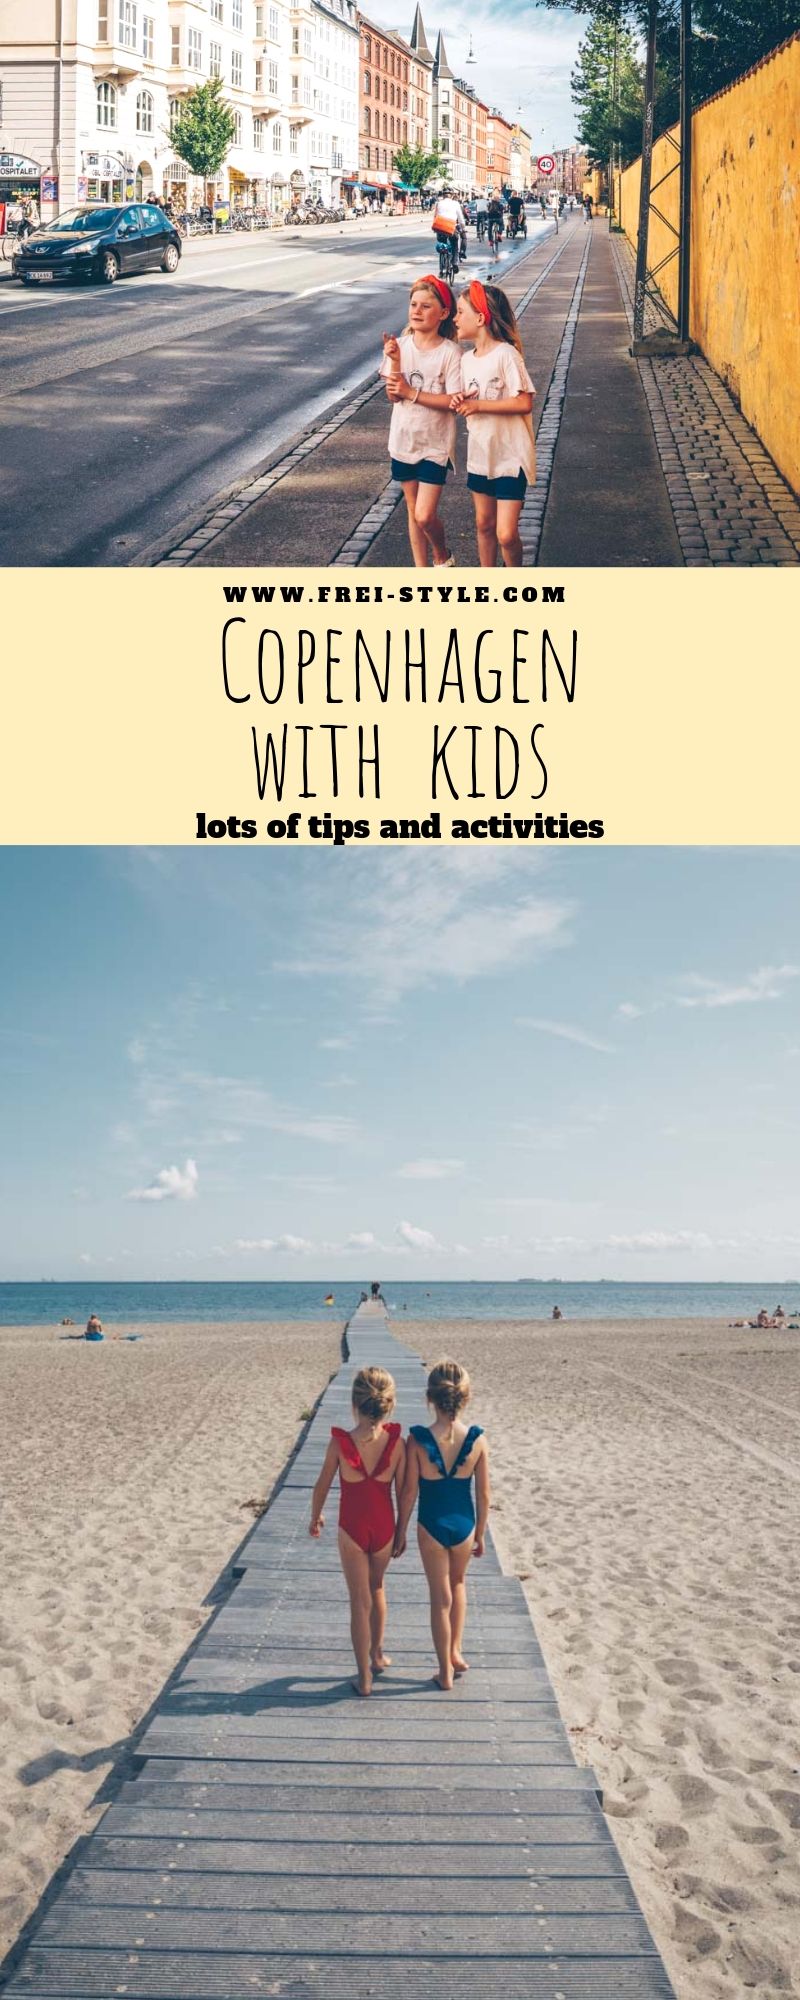 Copenhagen with kids